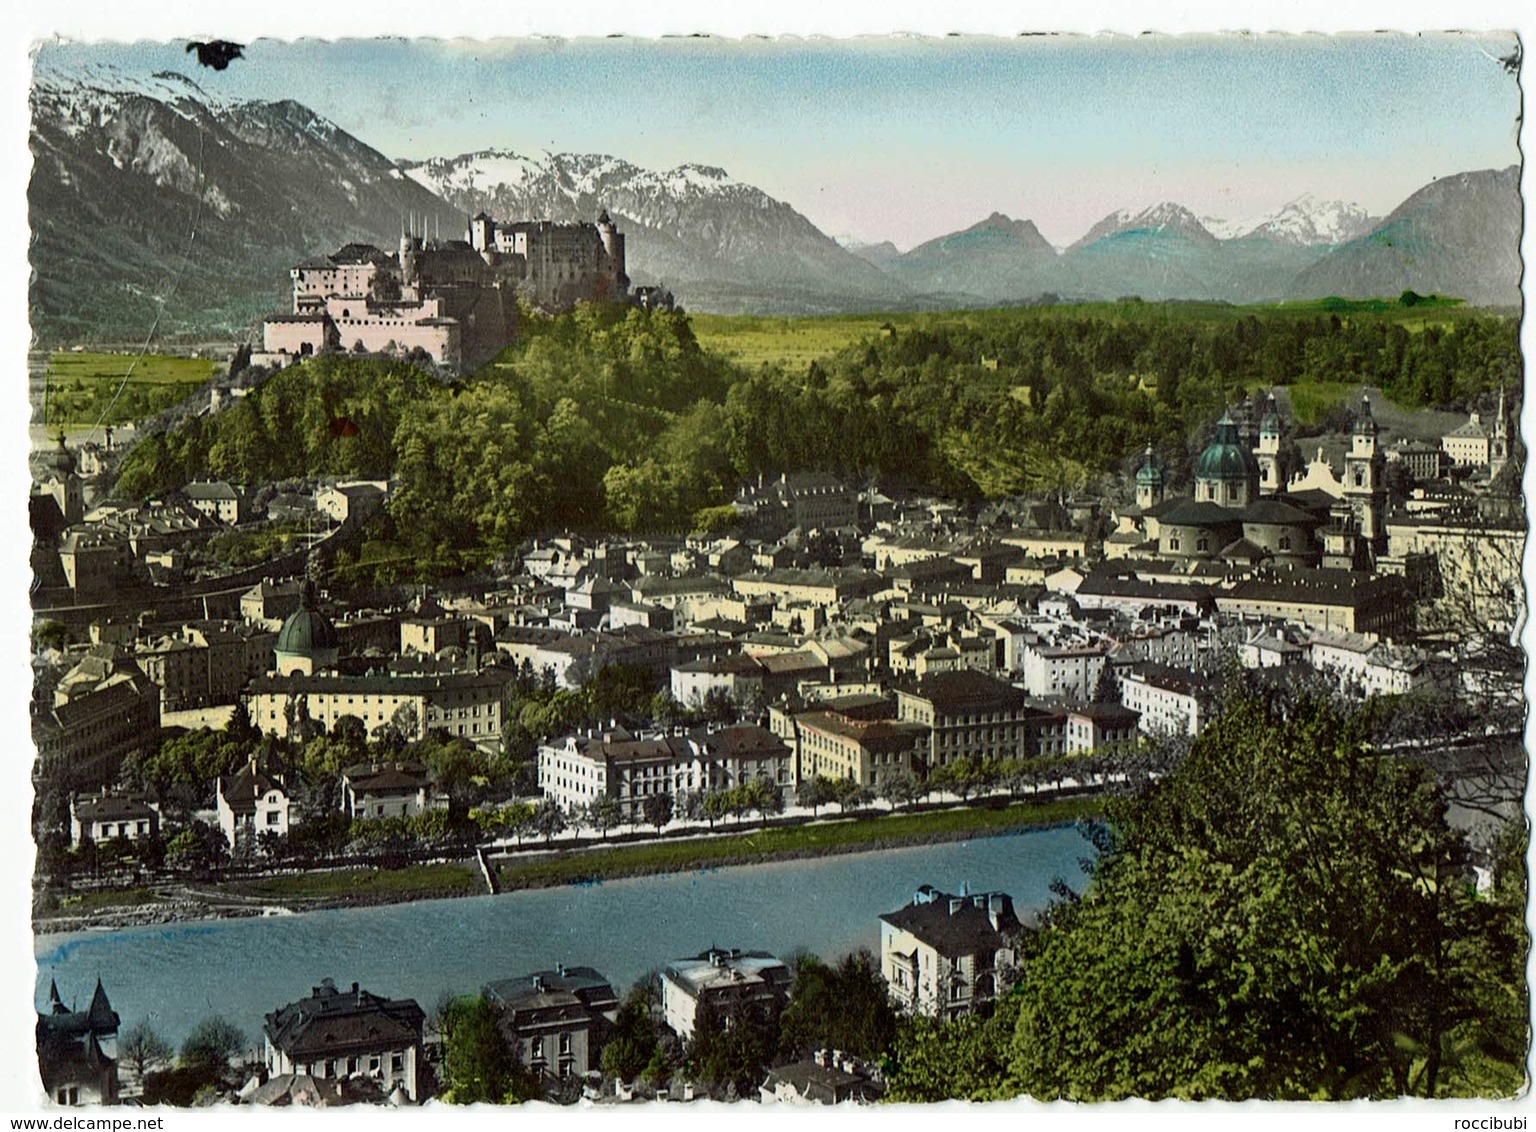 Salzburg, Die Salzachstadt - Salzburg Stadt